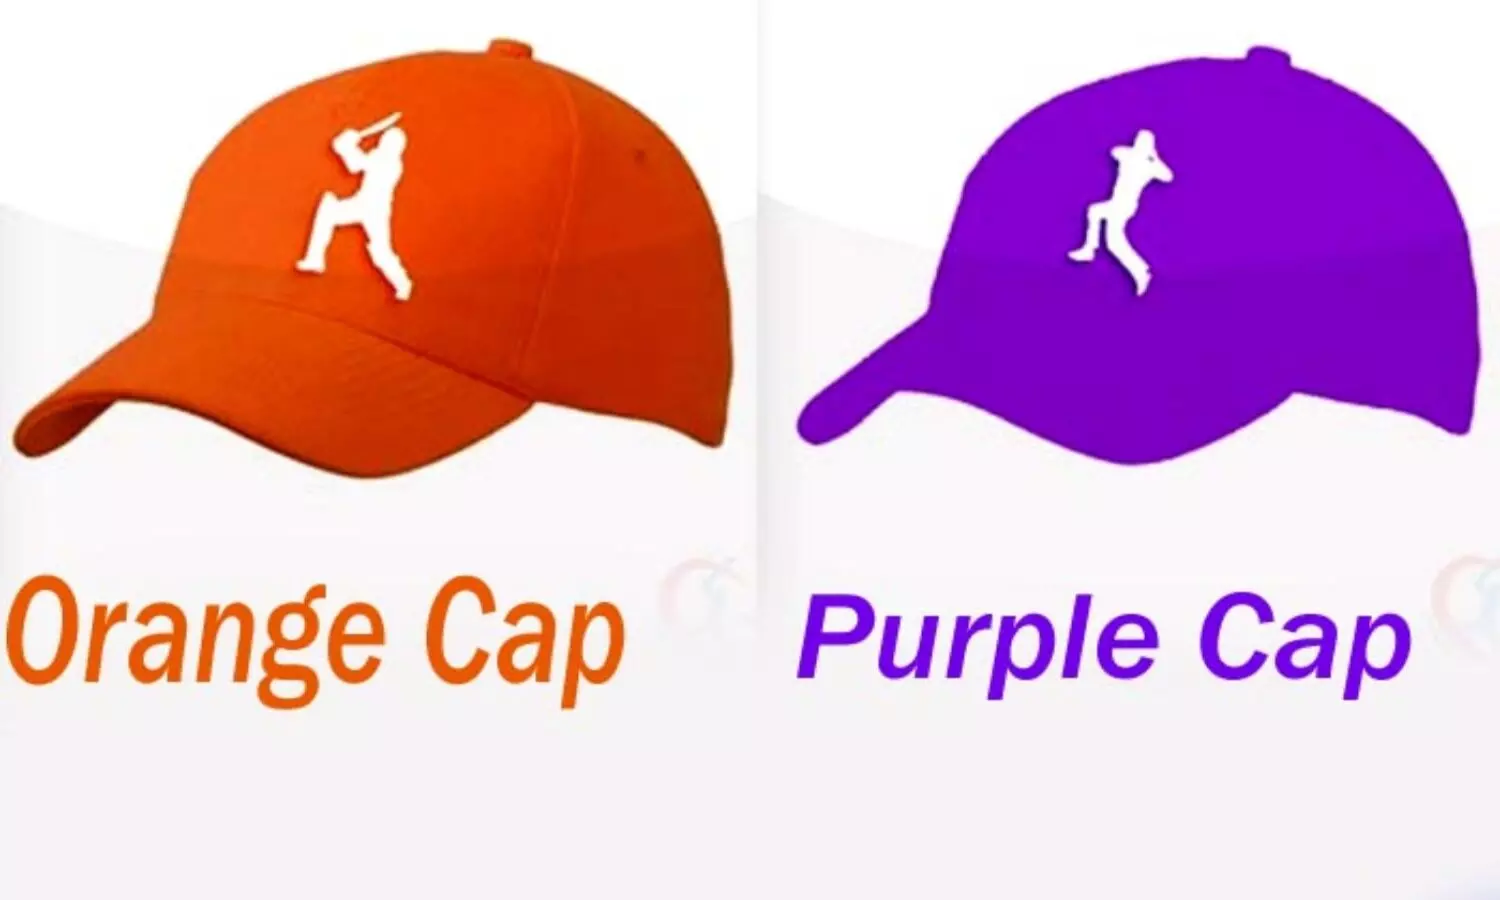 IPL 2022 Points Table, Orange Cap and Purple Cap